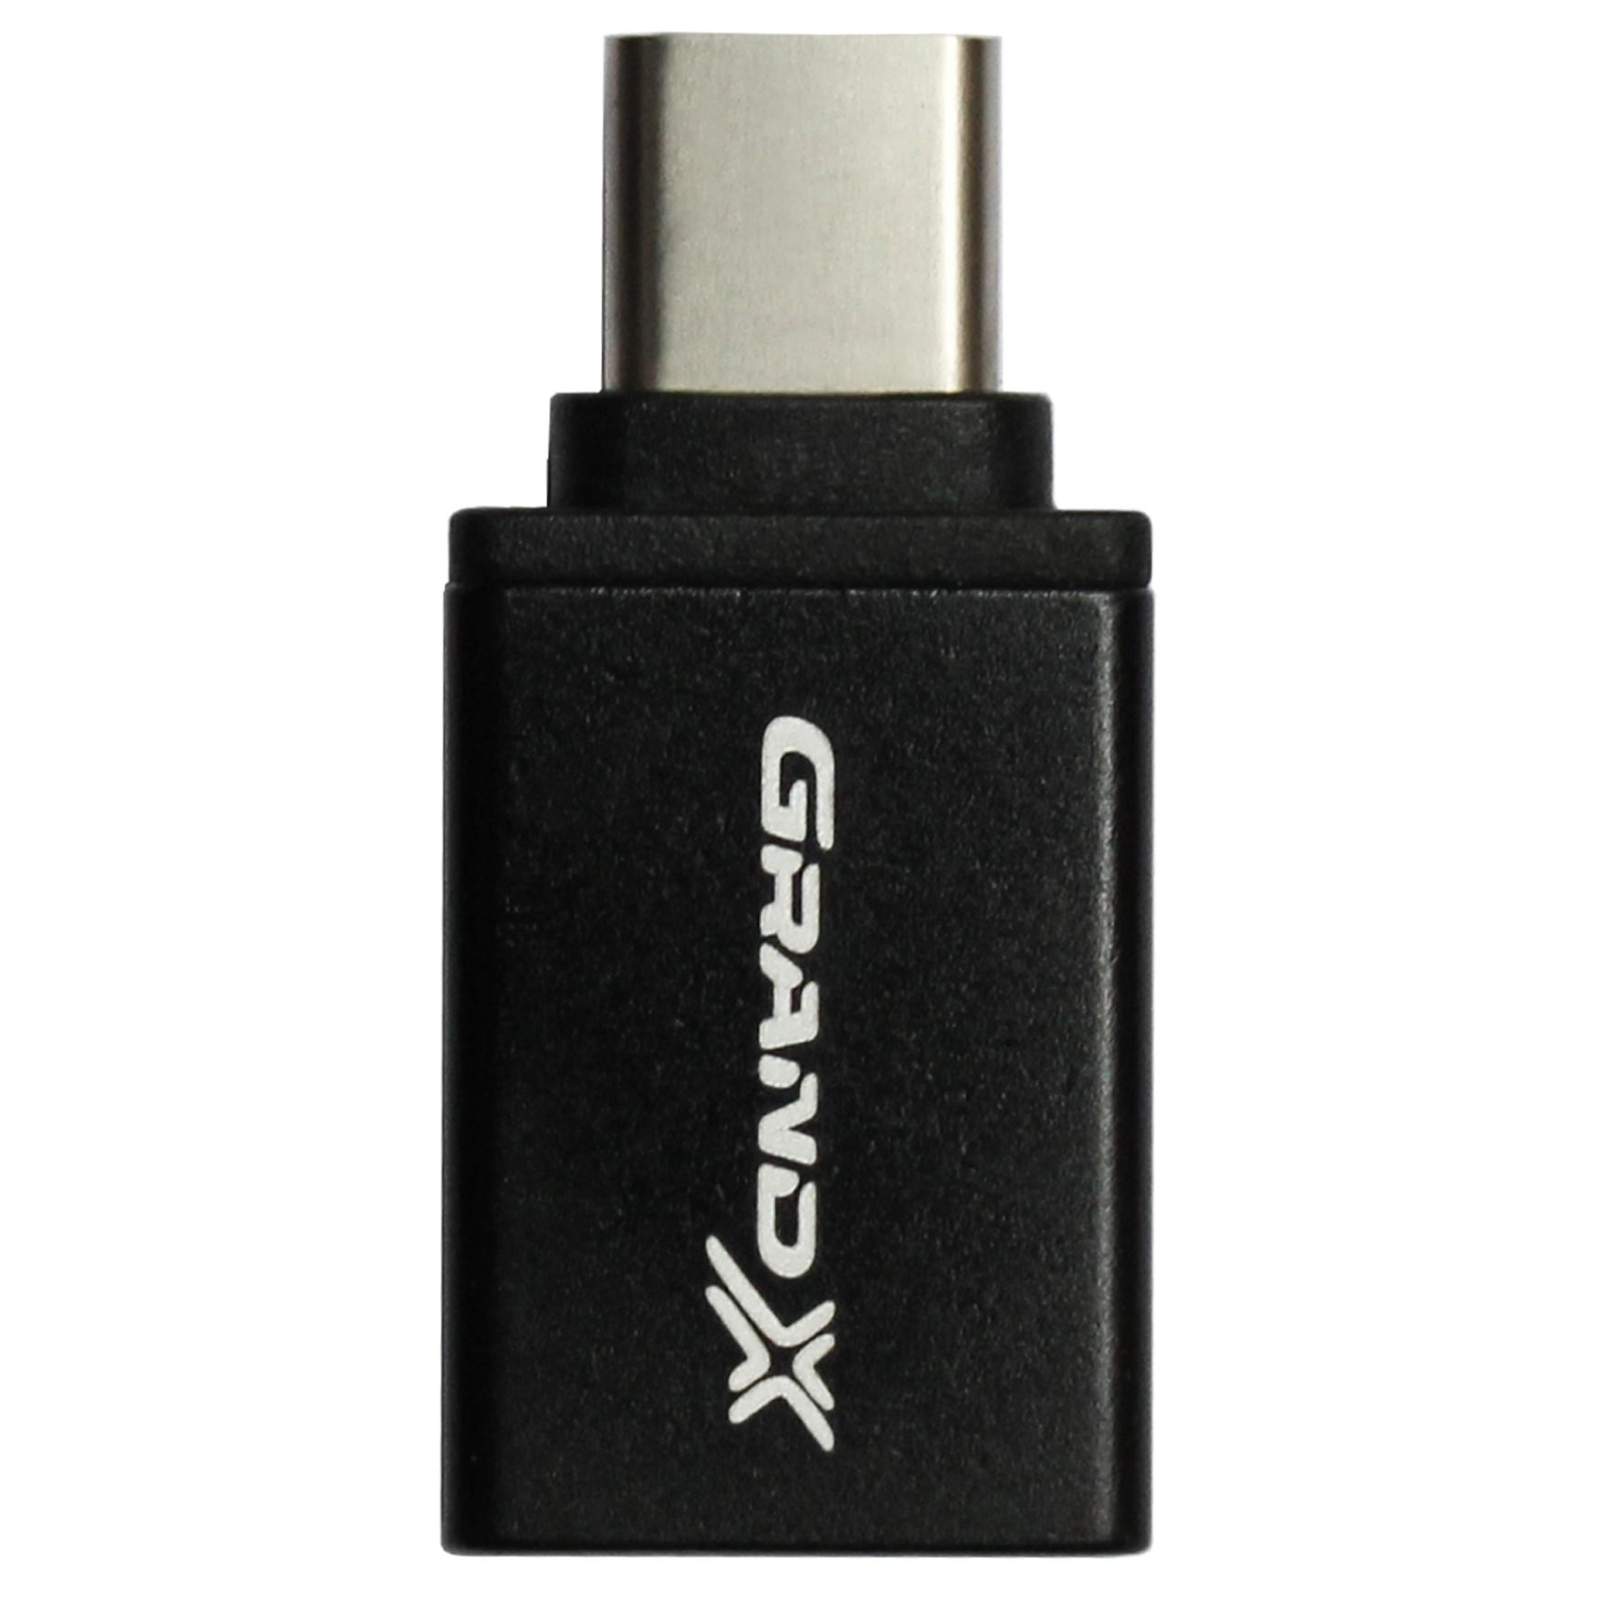 Переходник Type-C to USB Grand-X (AD-112) изображение 2